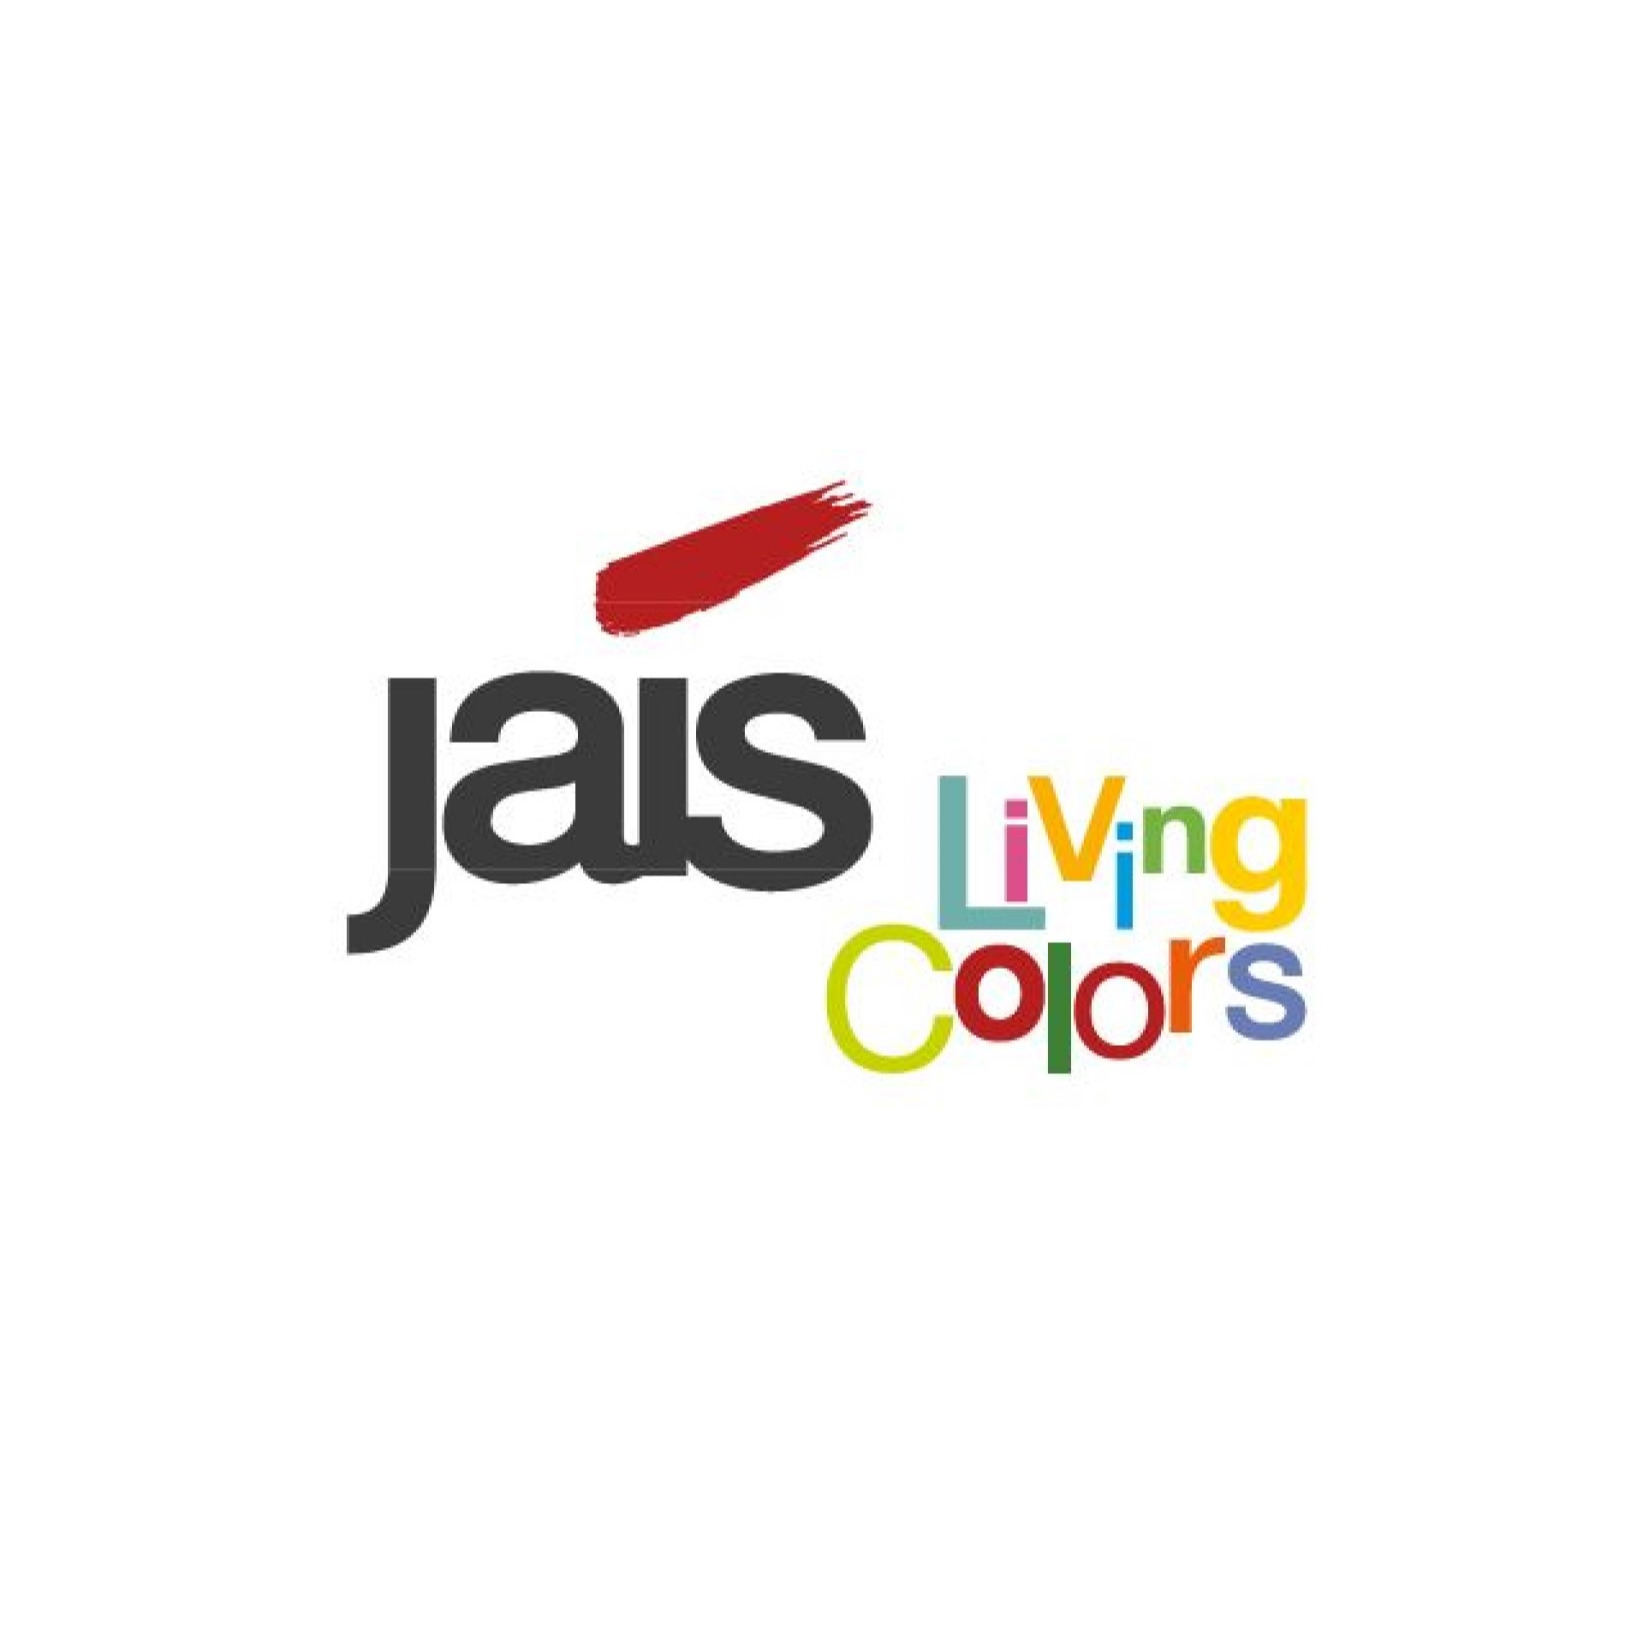 jais living colors